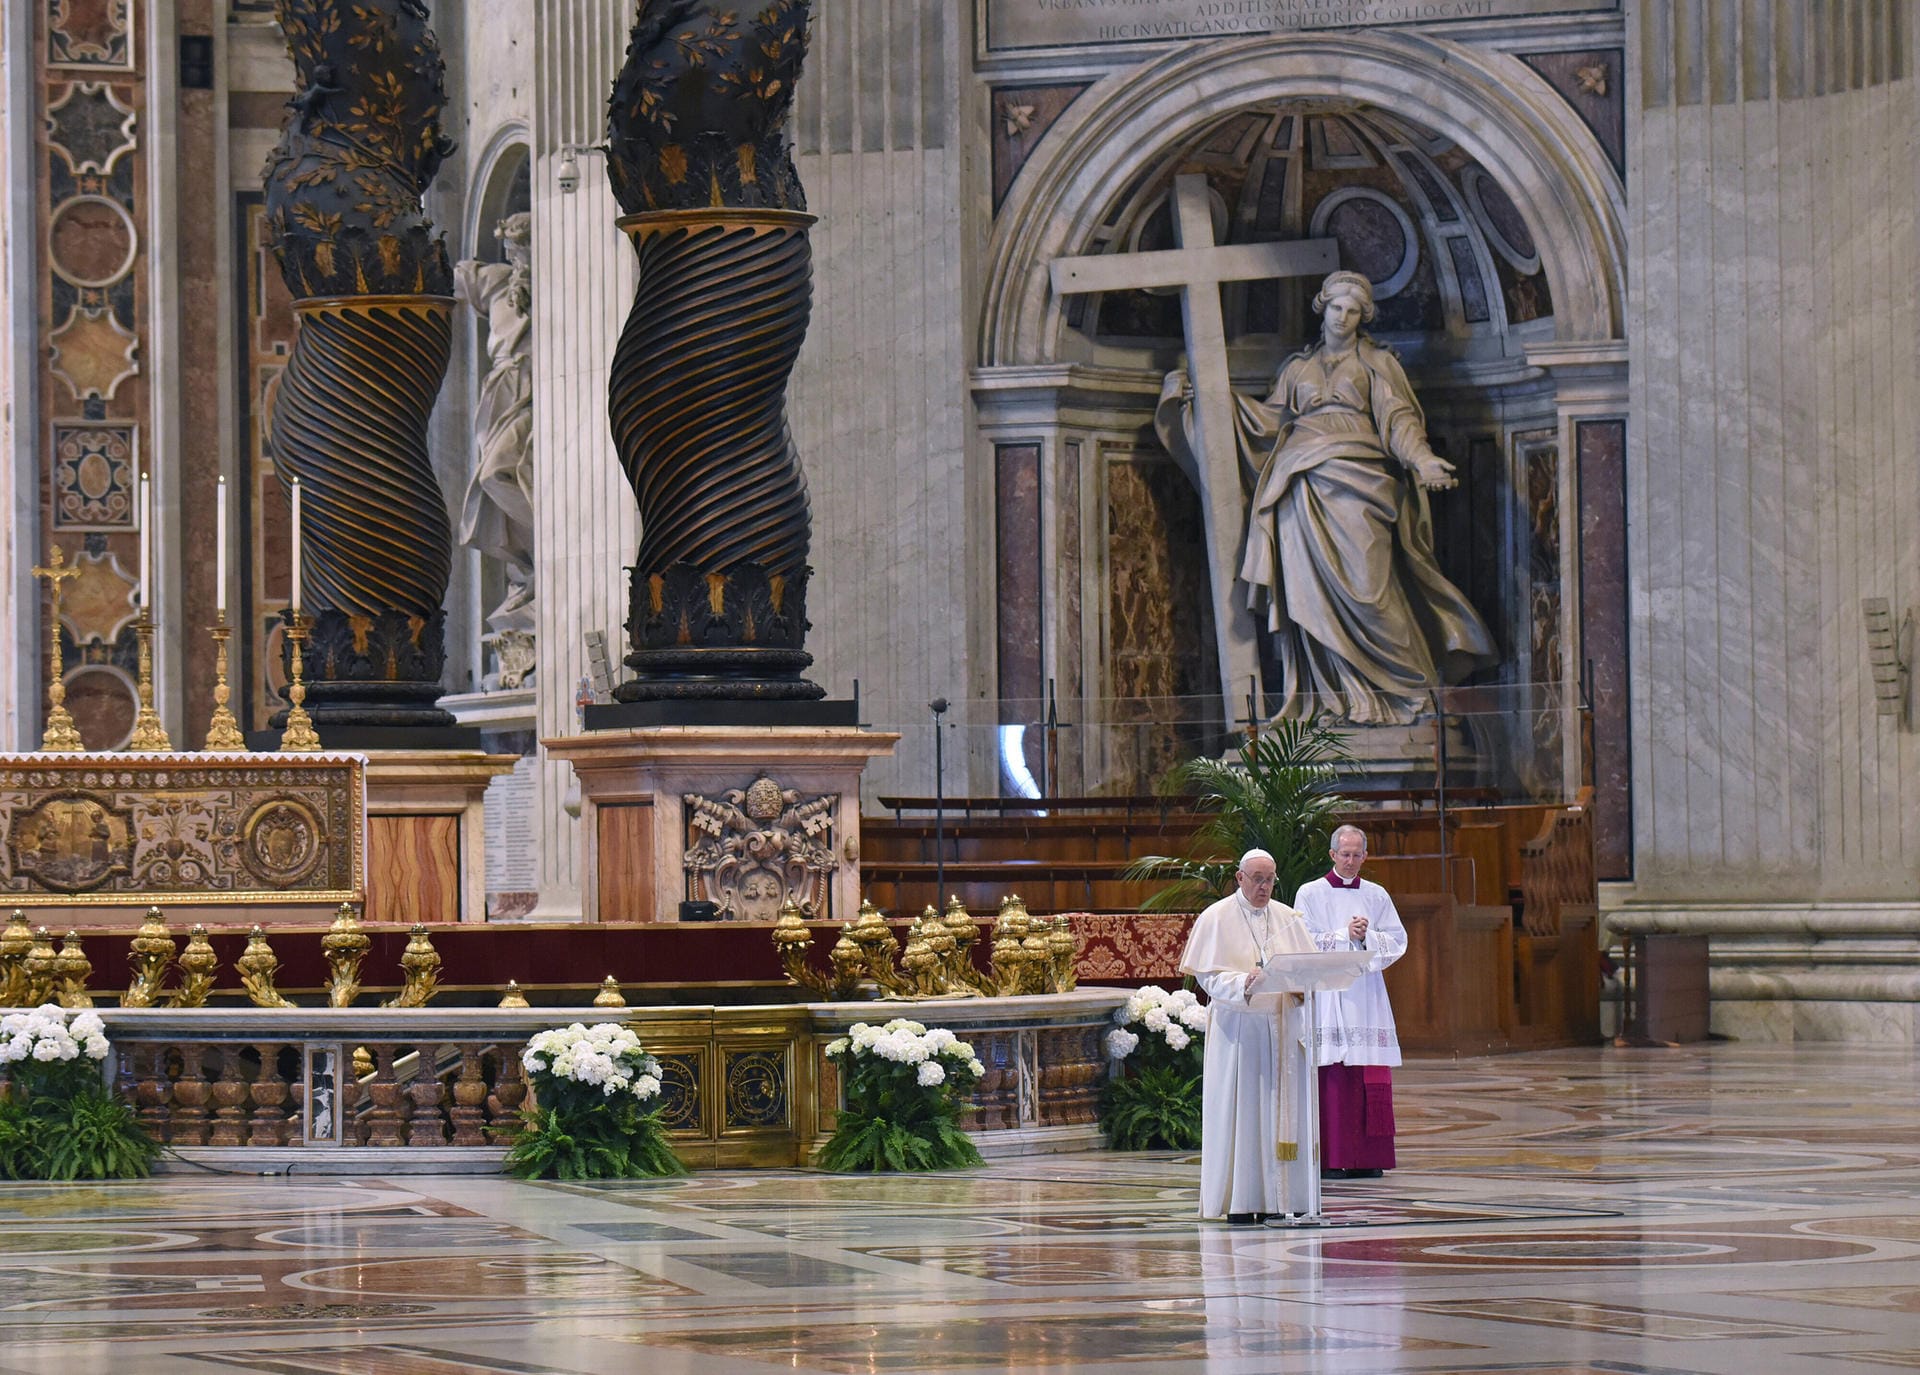 Am 10. April begeht Papst Franziskus Karfreitag und die folgenden Osterfeierlichkeiten weitgehend allein im Vatikan. Weltweit lauschen die Menschen seinen Worten via Videoübertragung.